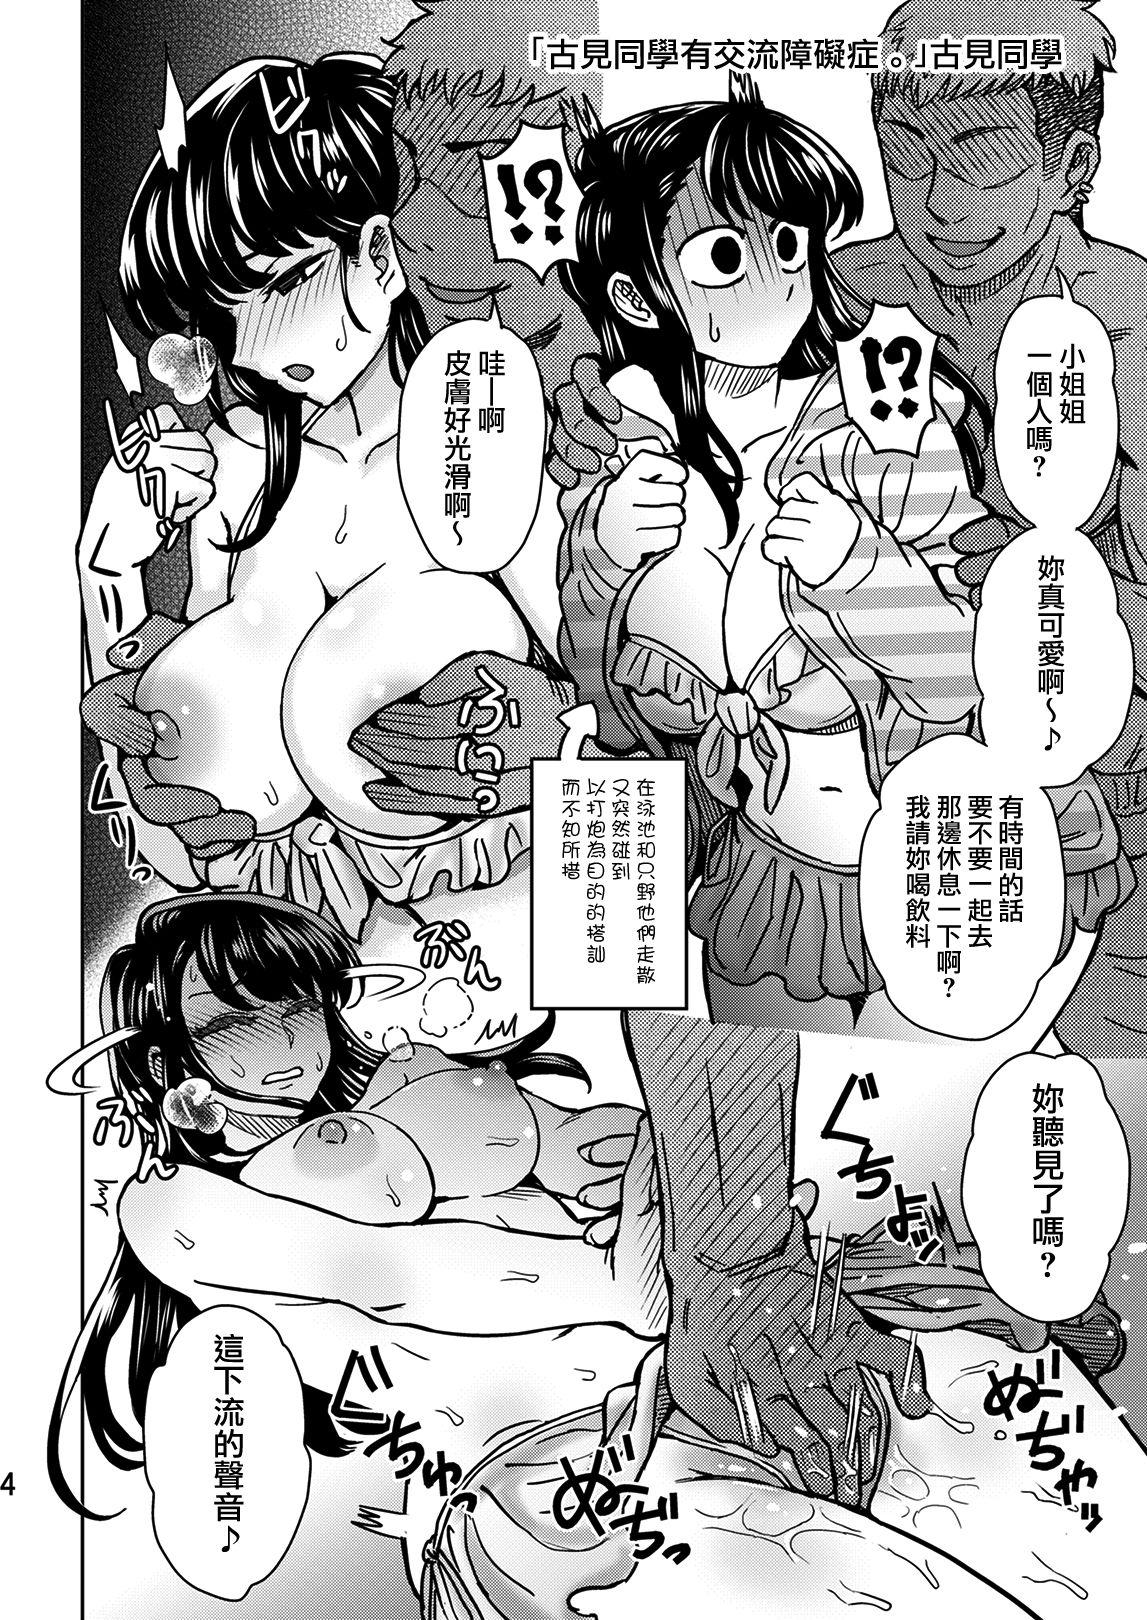 Livesex C95 Yorozu NTR Short Manga Shuu - Komi san wa komyushou desu. Tight Pussy Fuck - Page 5